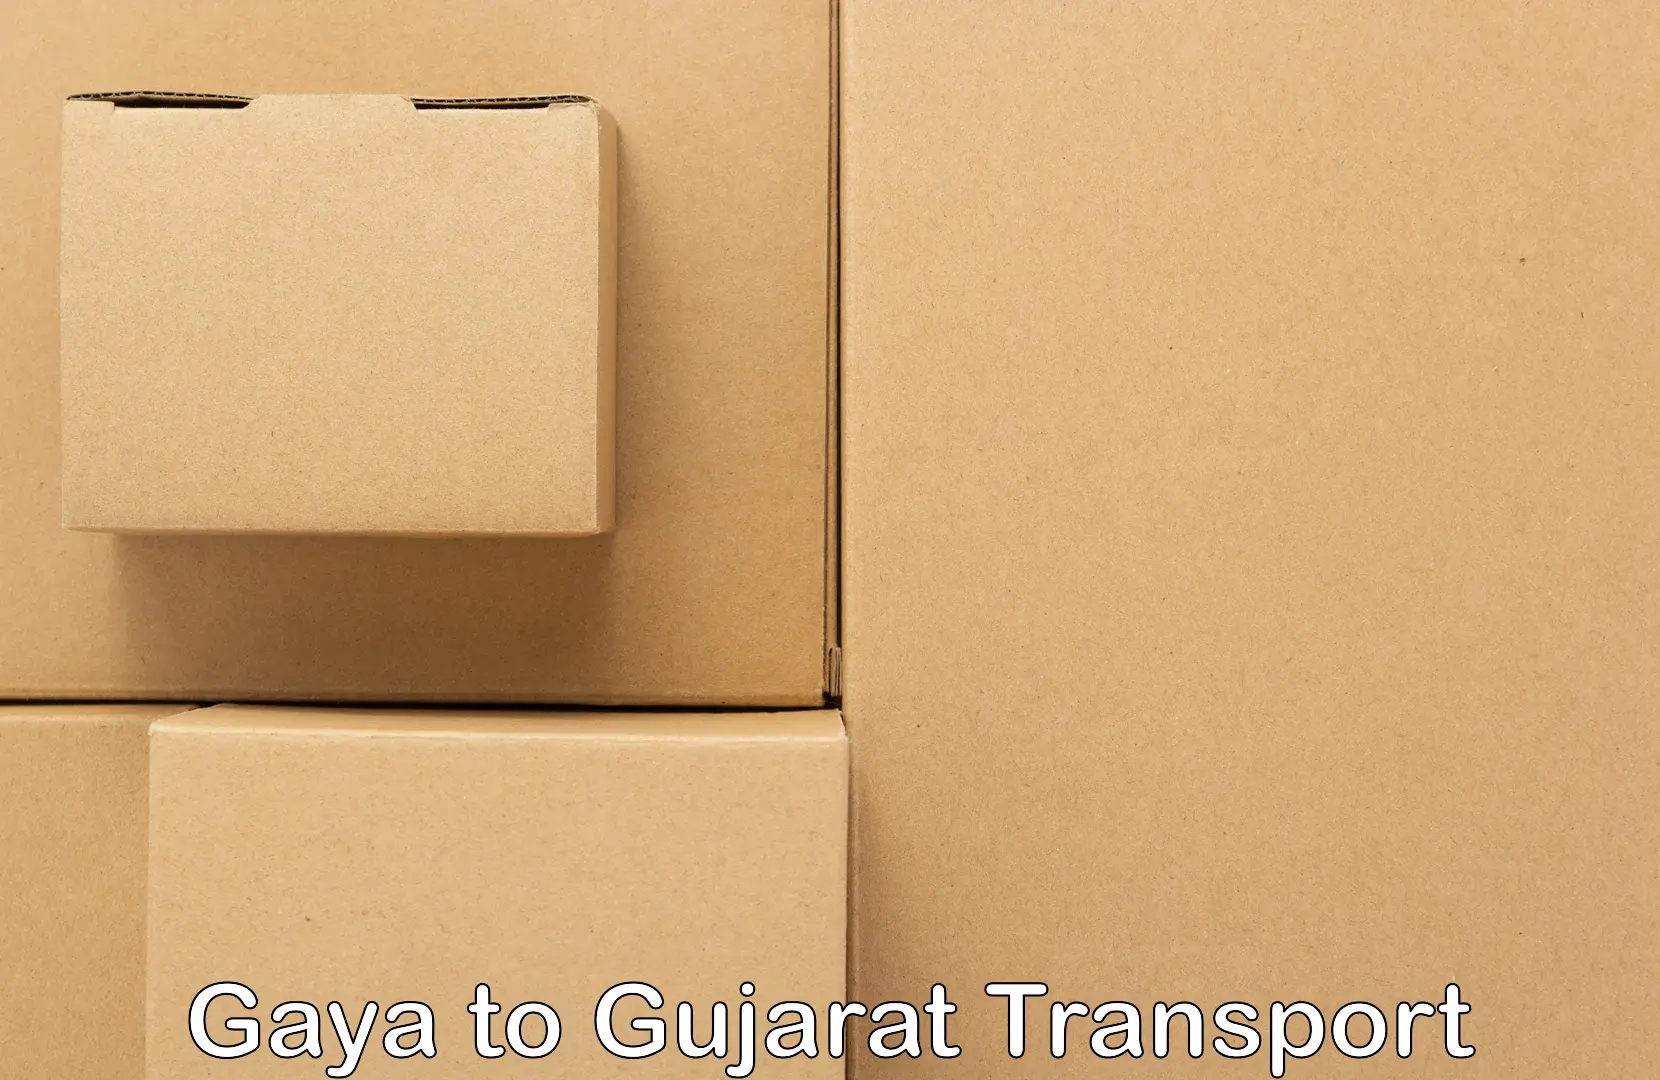 Air freight transport services Gaya to Jasdan